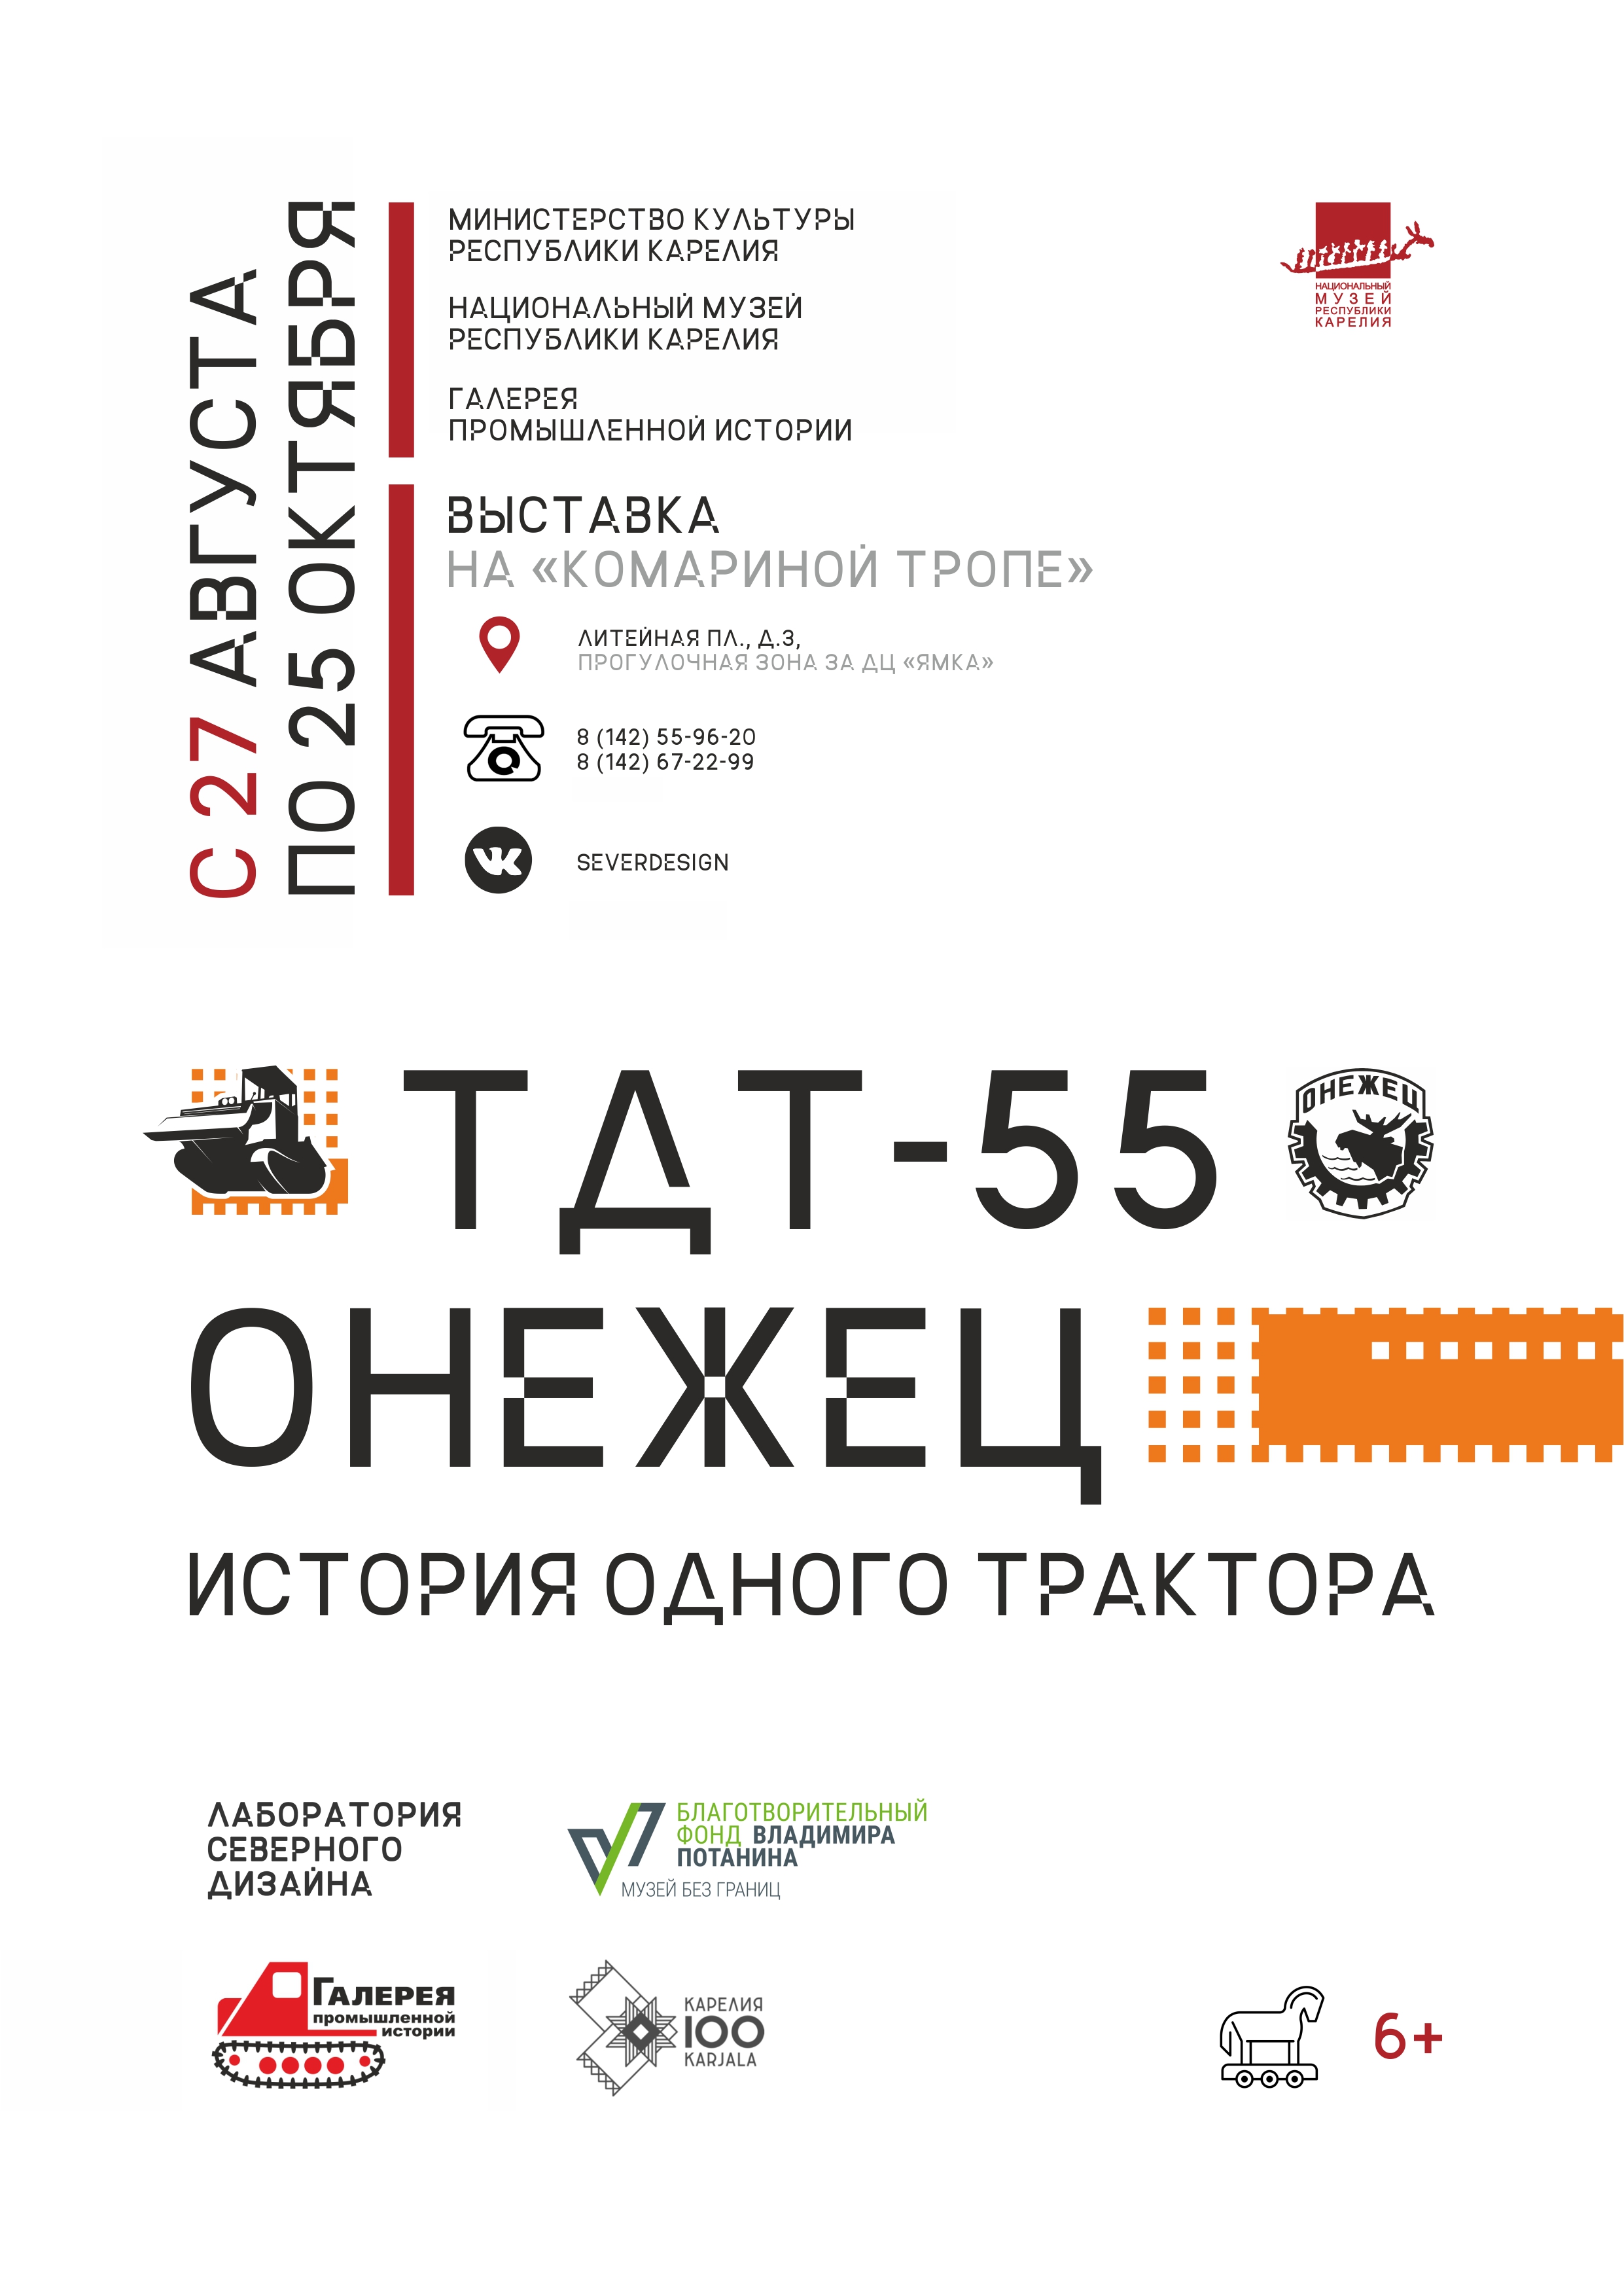 Открытие выставки «ТДТ-55 «Онежец». История одного трактора»